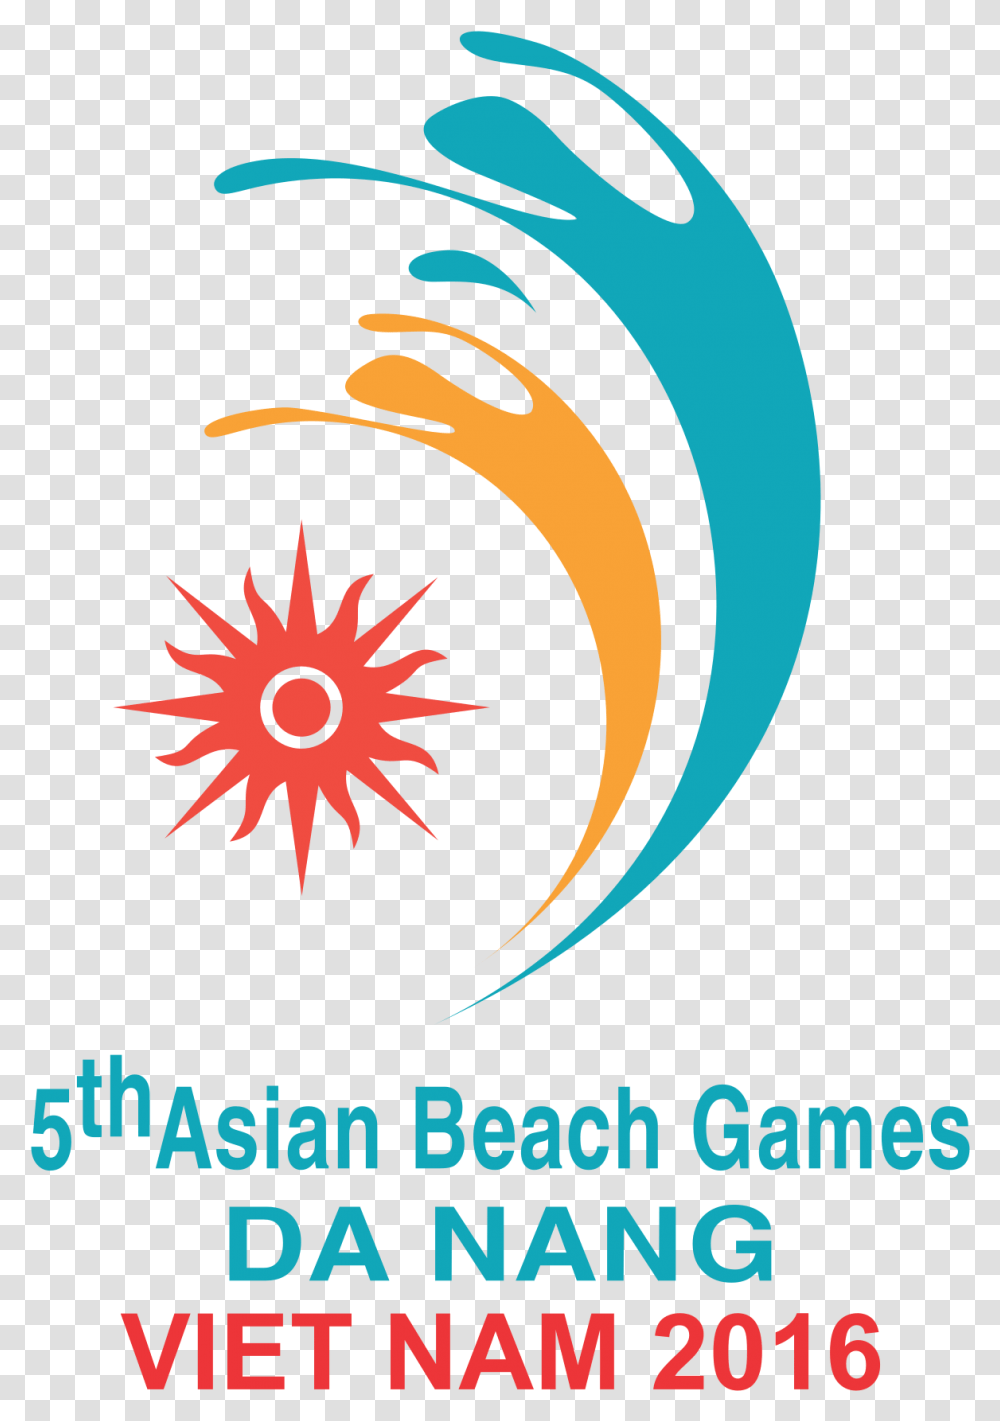 2016 Asian Beach Games Asian Beach Games 2016, Graphics, Art, Poster, Advertisement Transparent Png